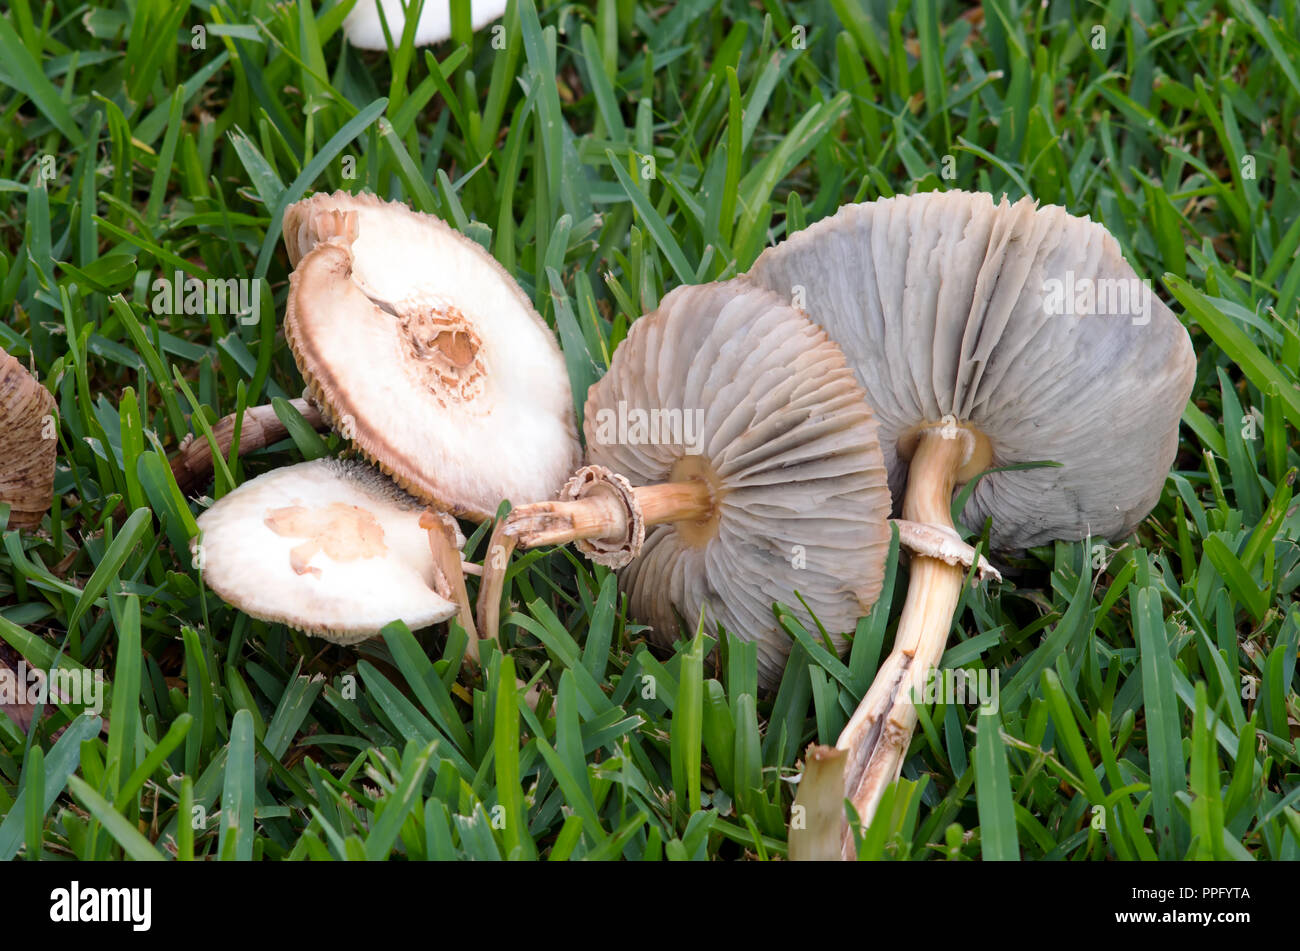 Rovesciato i funghi con le branchie visibile in un prato di erba. Foto Stock